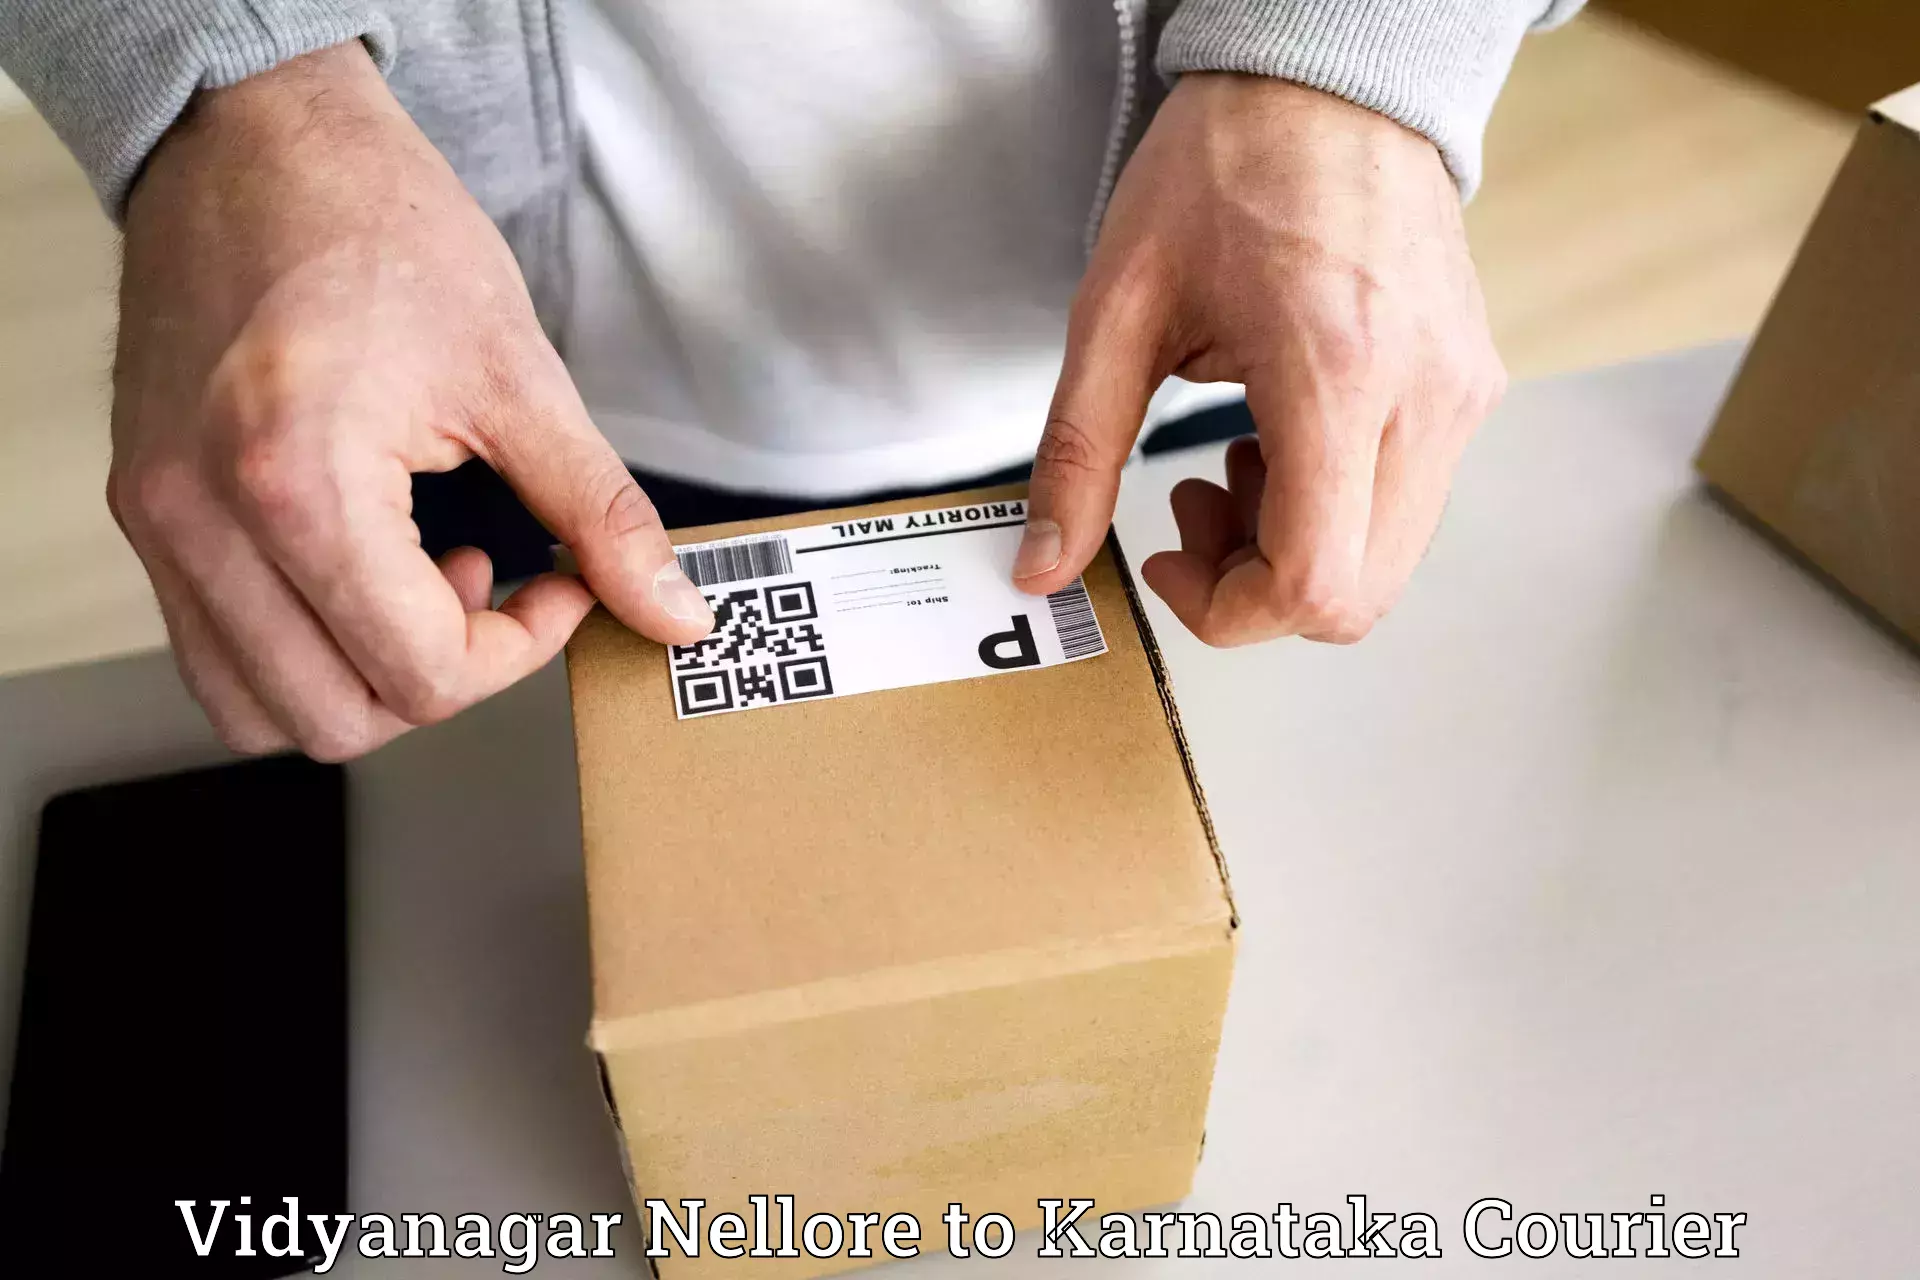 User-friendly courier app Vidyanagar Nellore to Byadagi